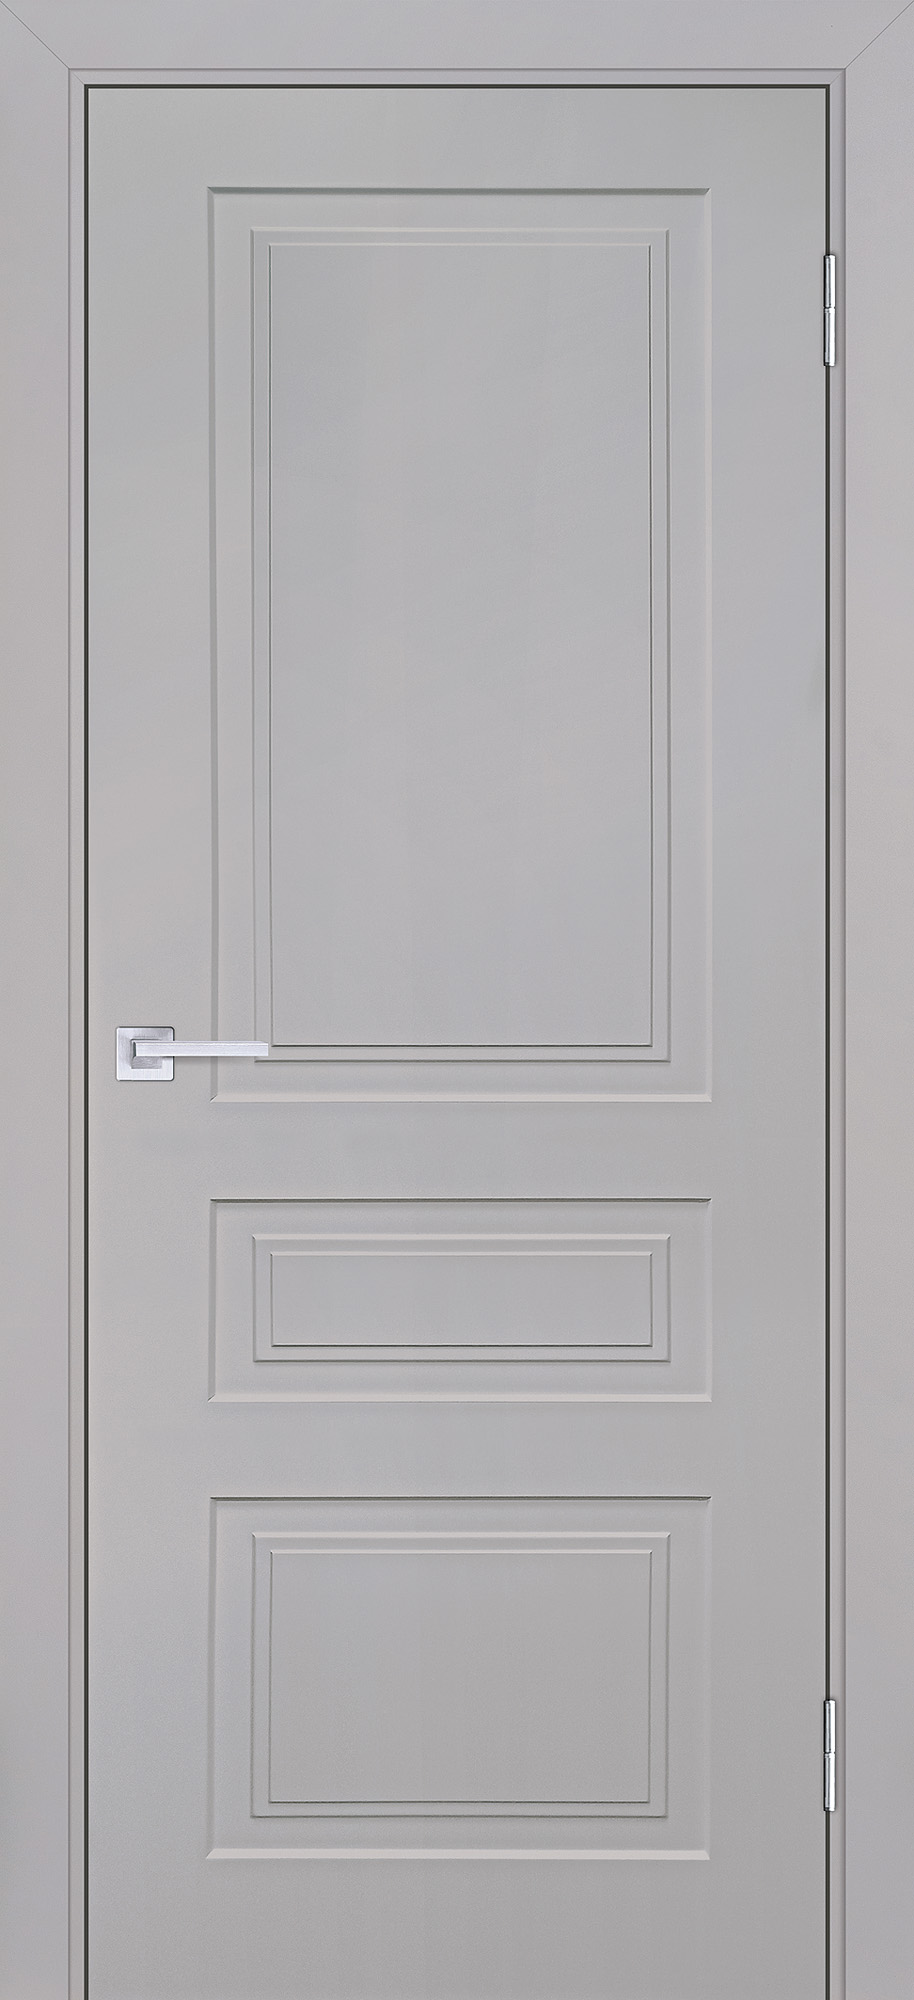 Двери крашеные (Эмаль) ТЕКОНА Смальта-Лайн 05 глухое Агат ral 7044 размер 190 х 60 см. артикул F0000093235